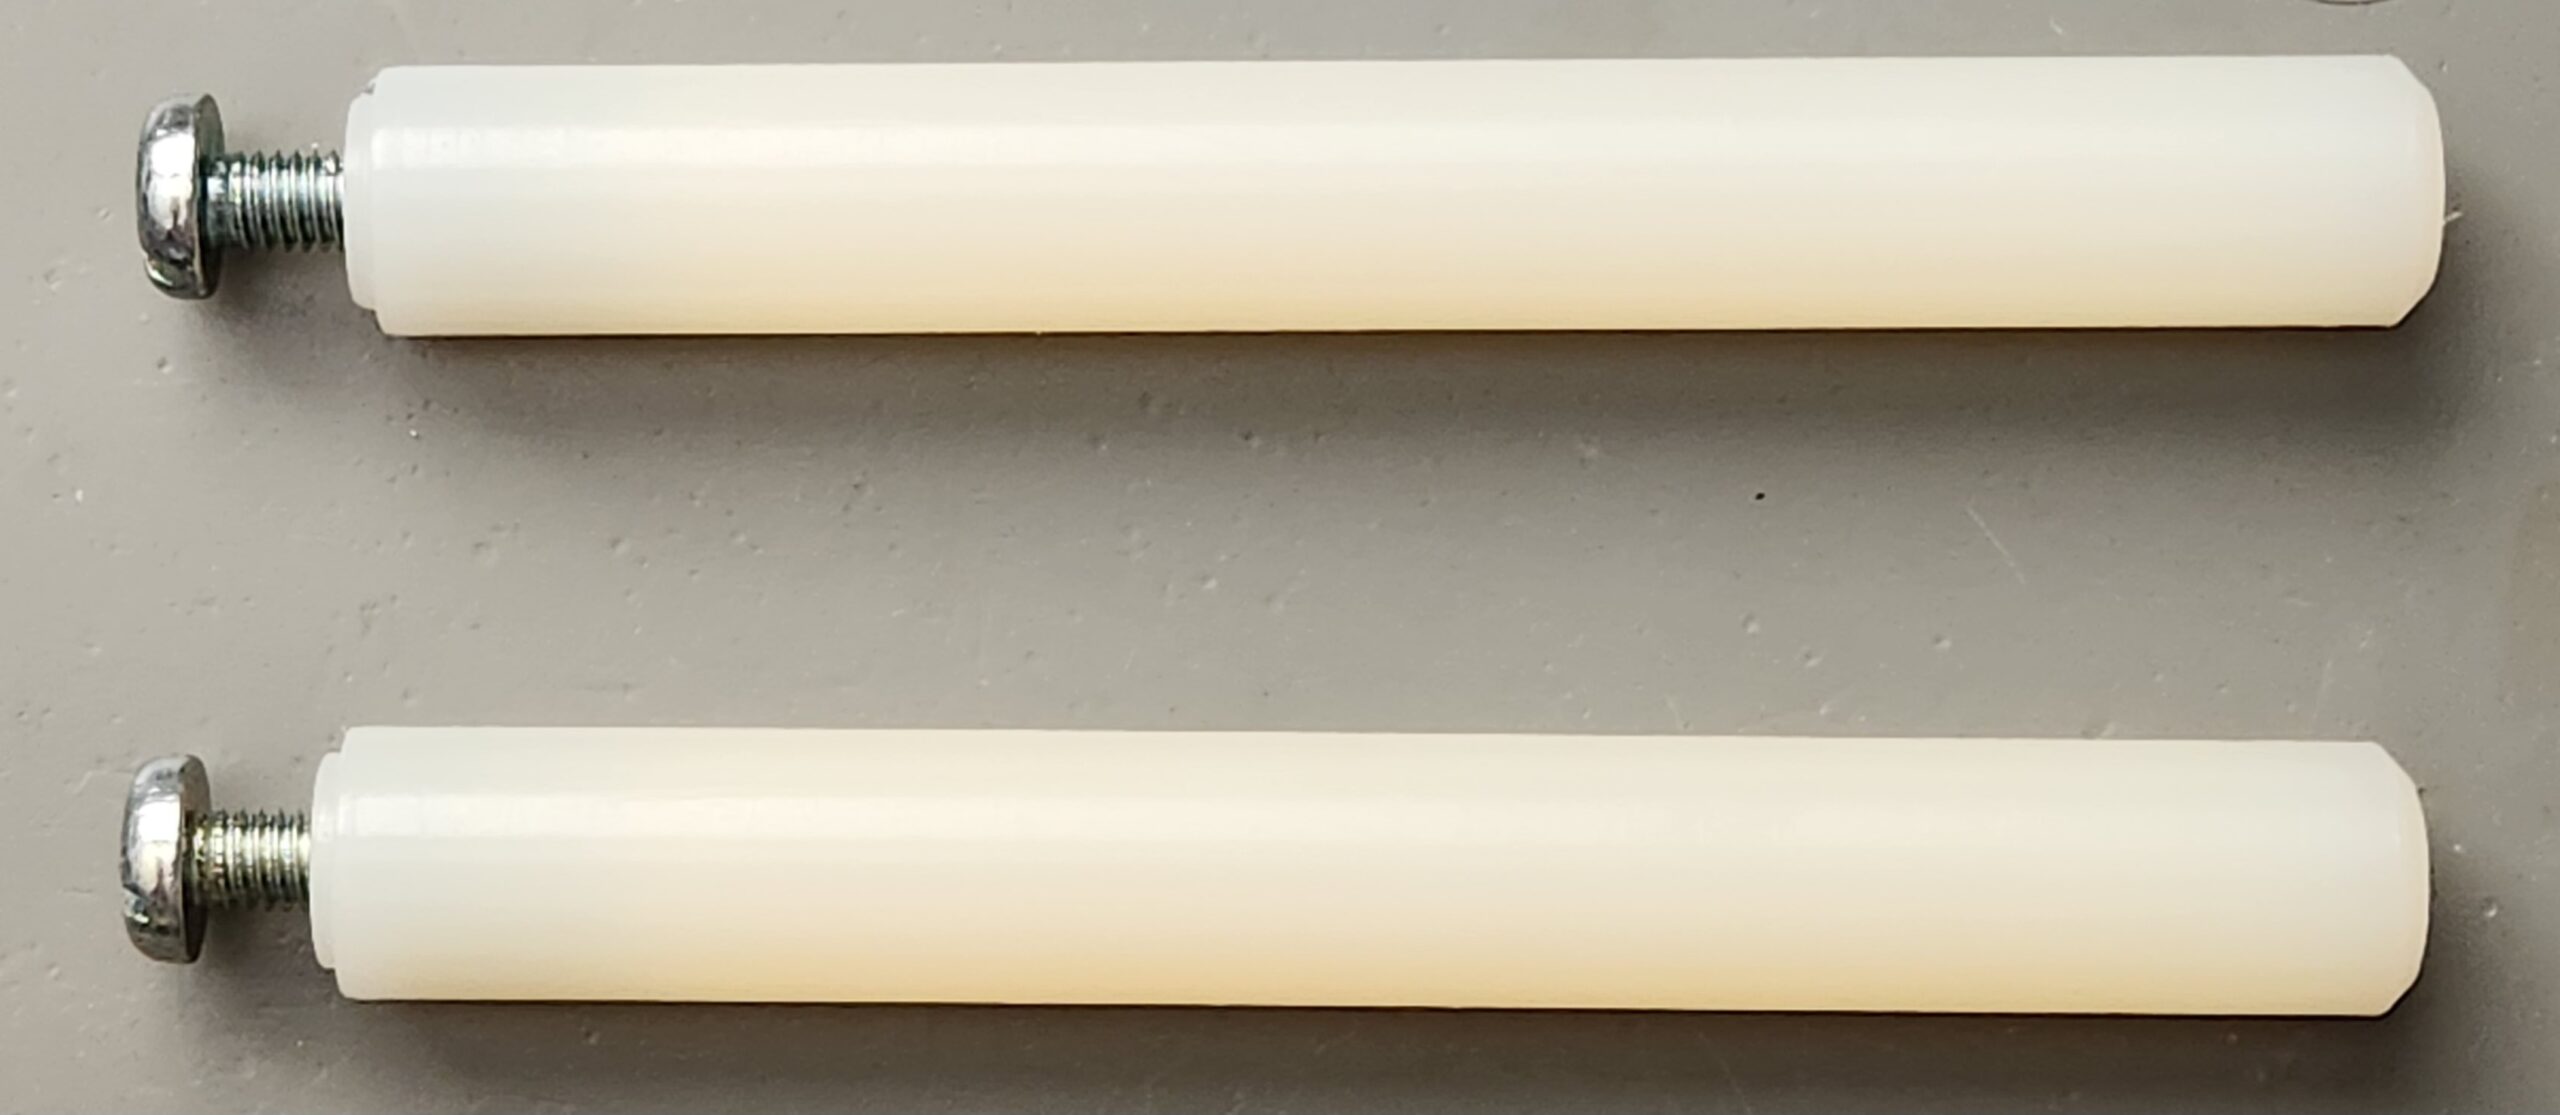 Nylon pen slide rods